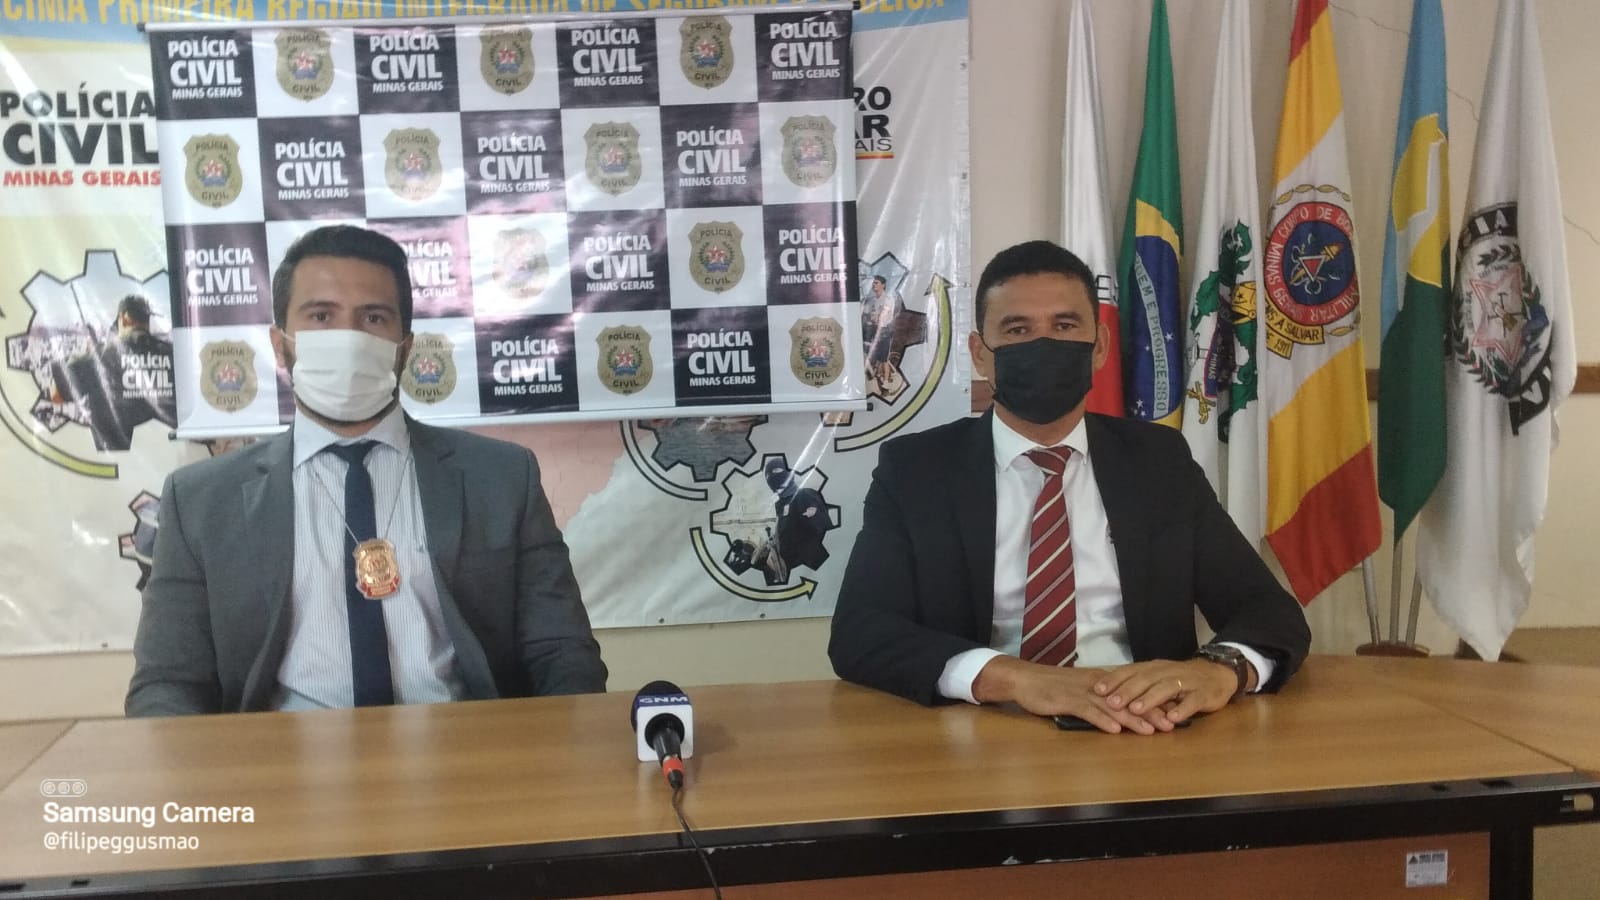 PC de Minas Gerais promove a prisão em flagrante de dois homens, suspeitos de incidirem na prática de crime de comércio de entorpecentes e associação para o tráfico